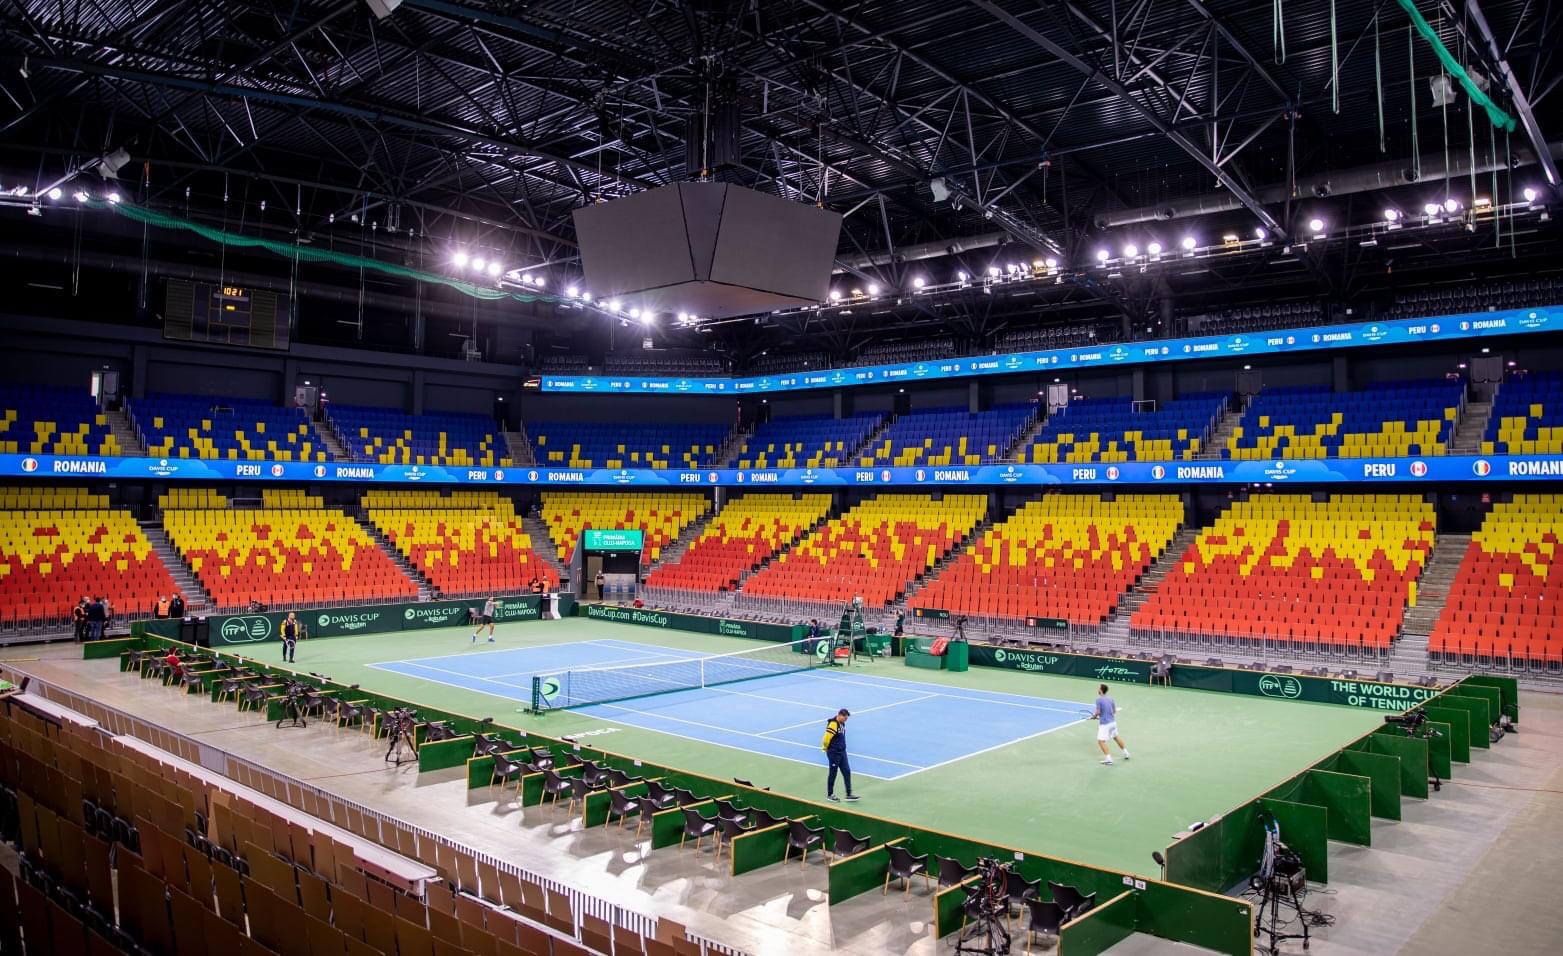 Intrarea libera la Cupa Davis, duminica 28 noiembrie, BT Arena - E fain la Cluj!